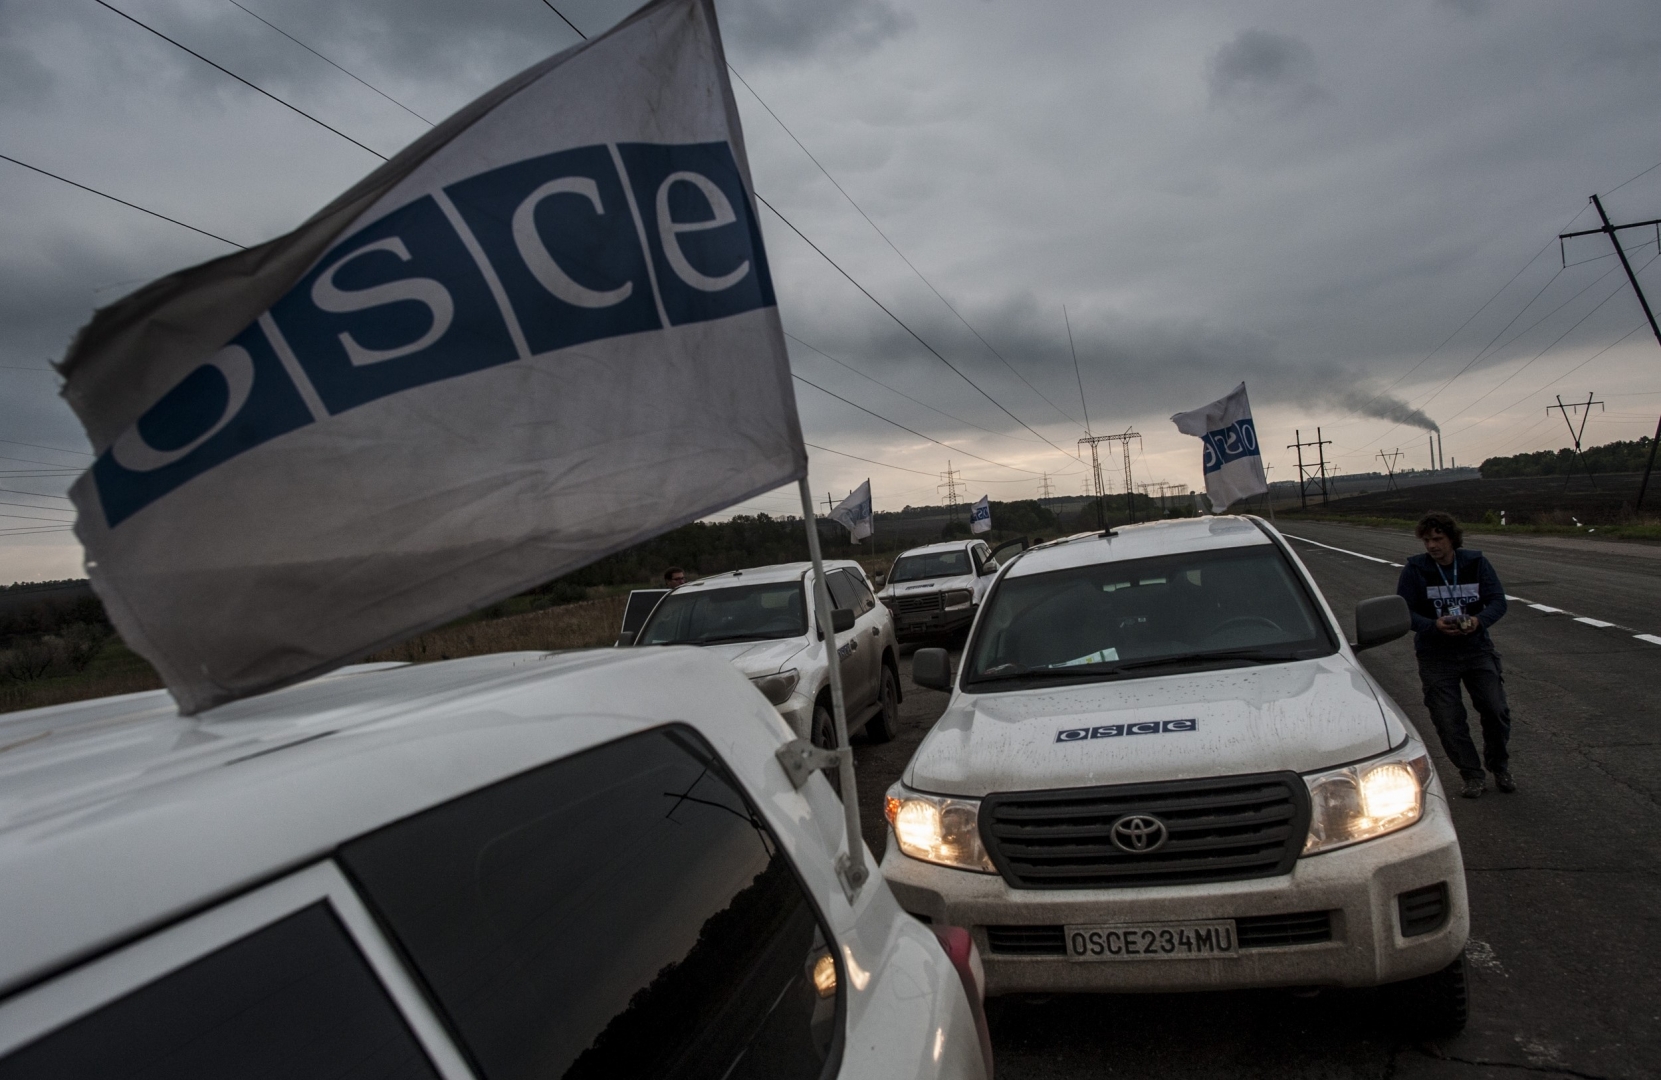 ОБСЕ: сообщения о присутствии российских военных в Донбассе не поступали